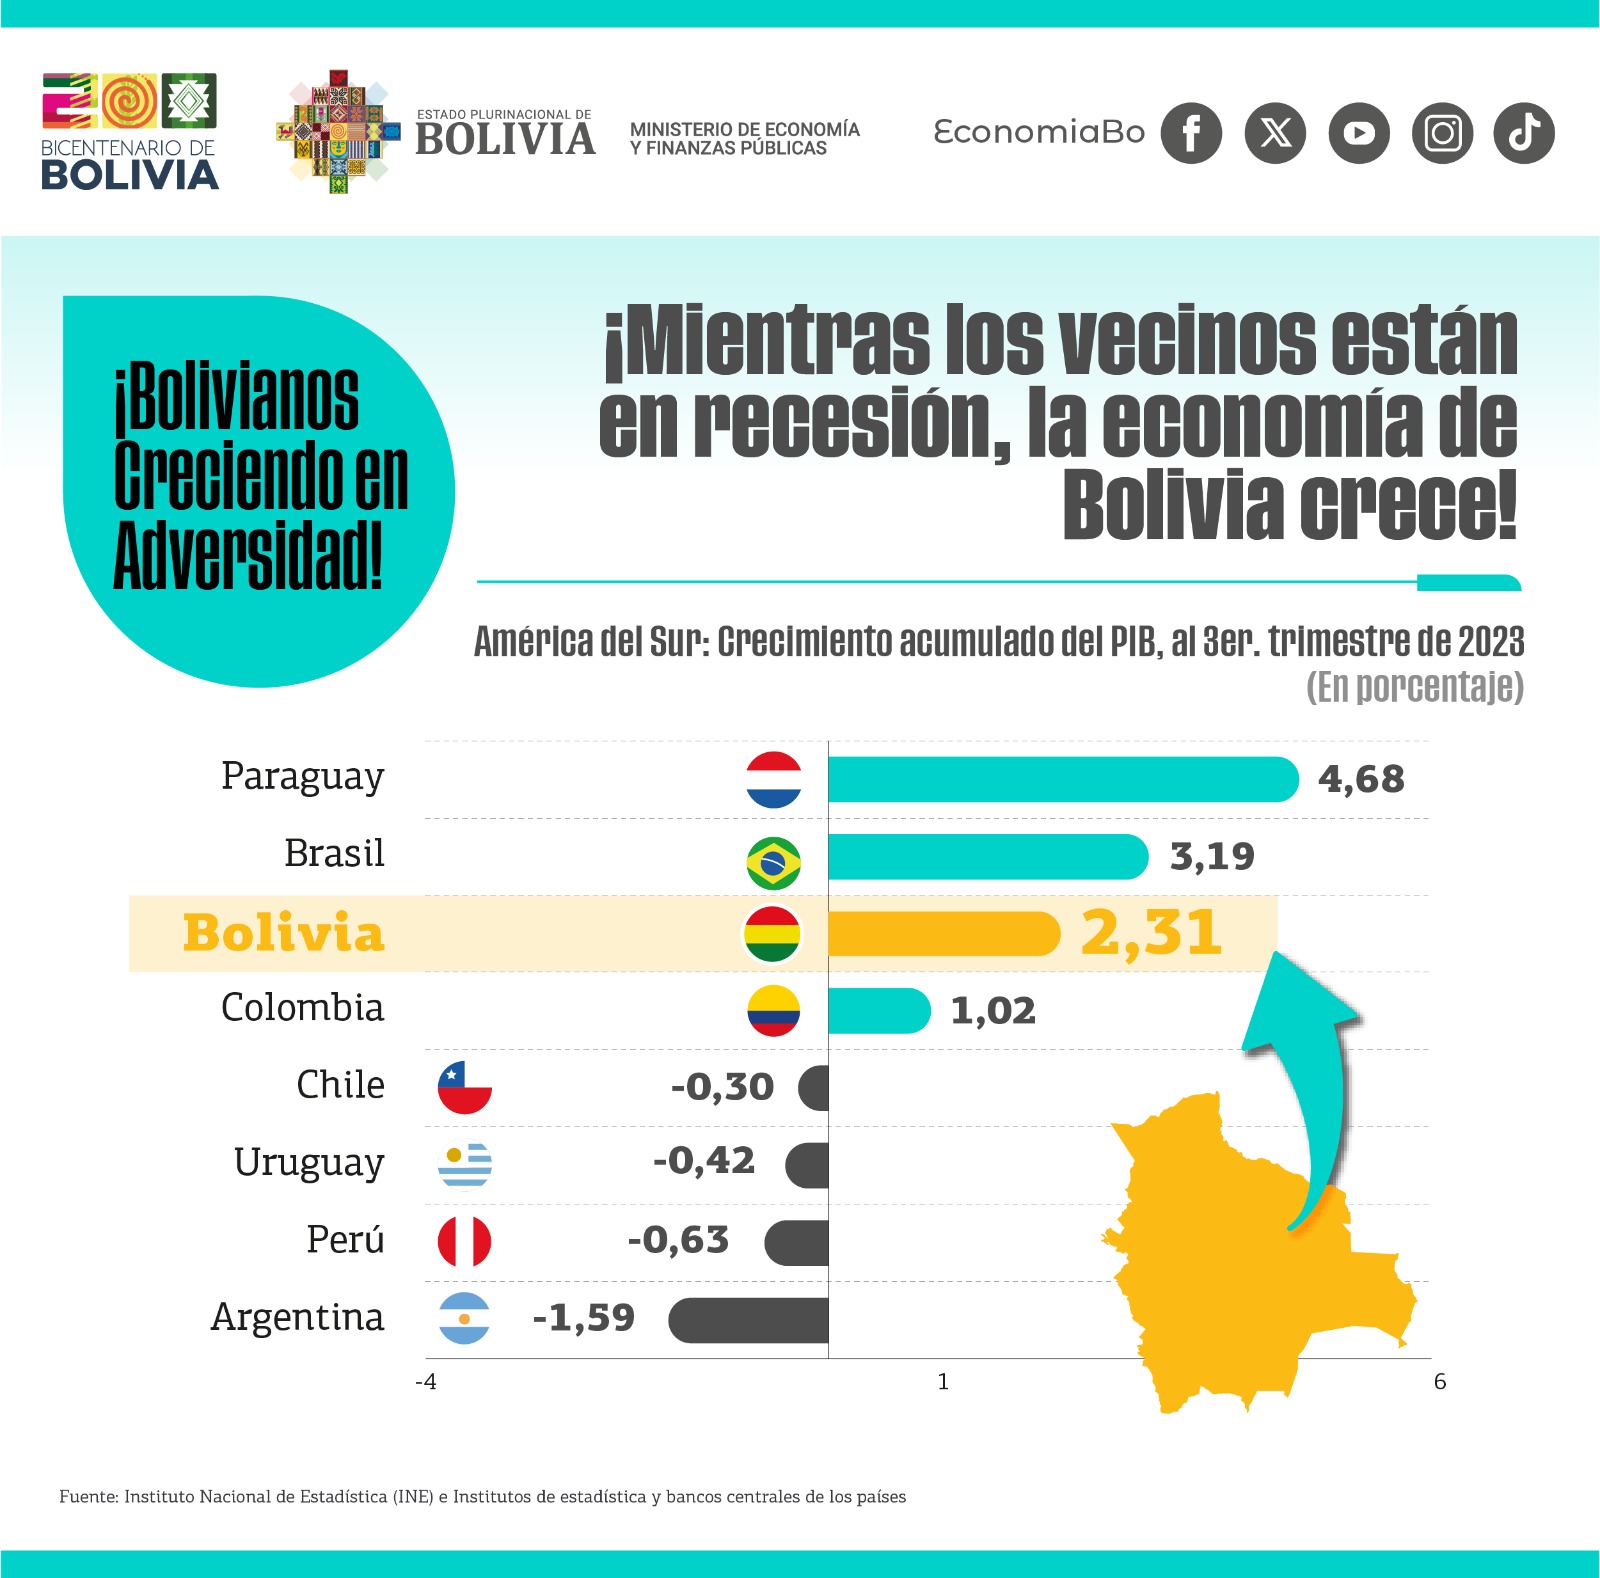 El Ministerio de Economía rechaza el informe de Moody’s y ratifica la estabilidad y crecimiento económico de Bolivia